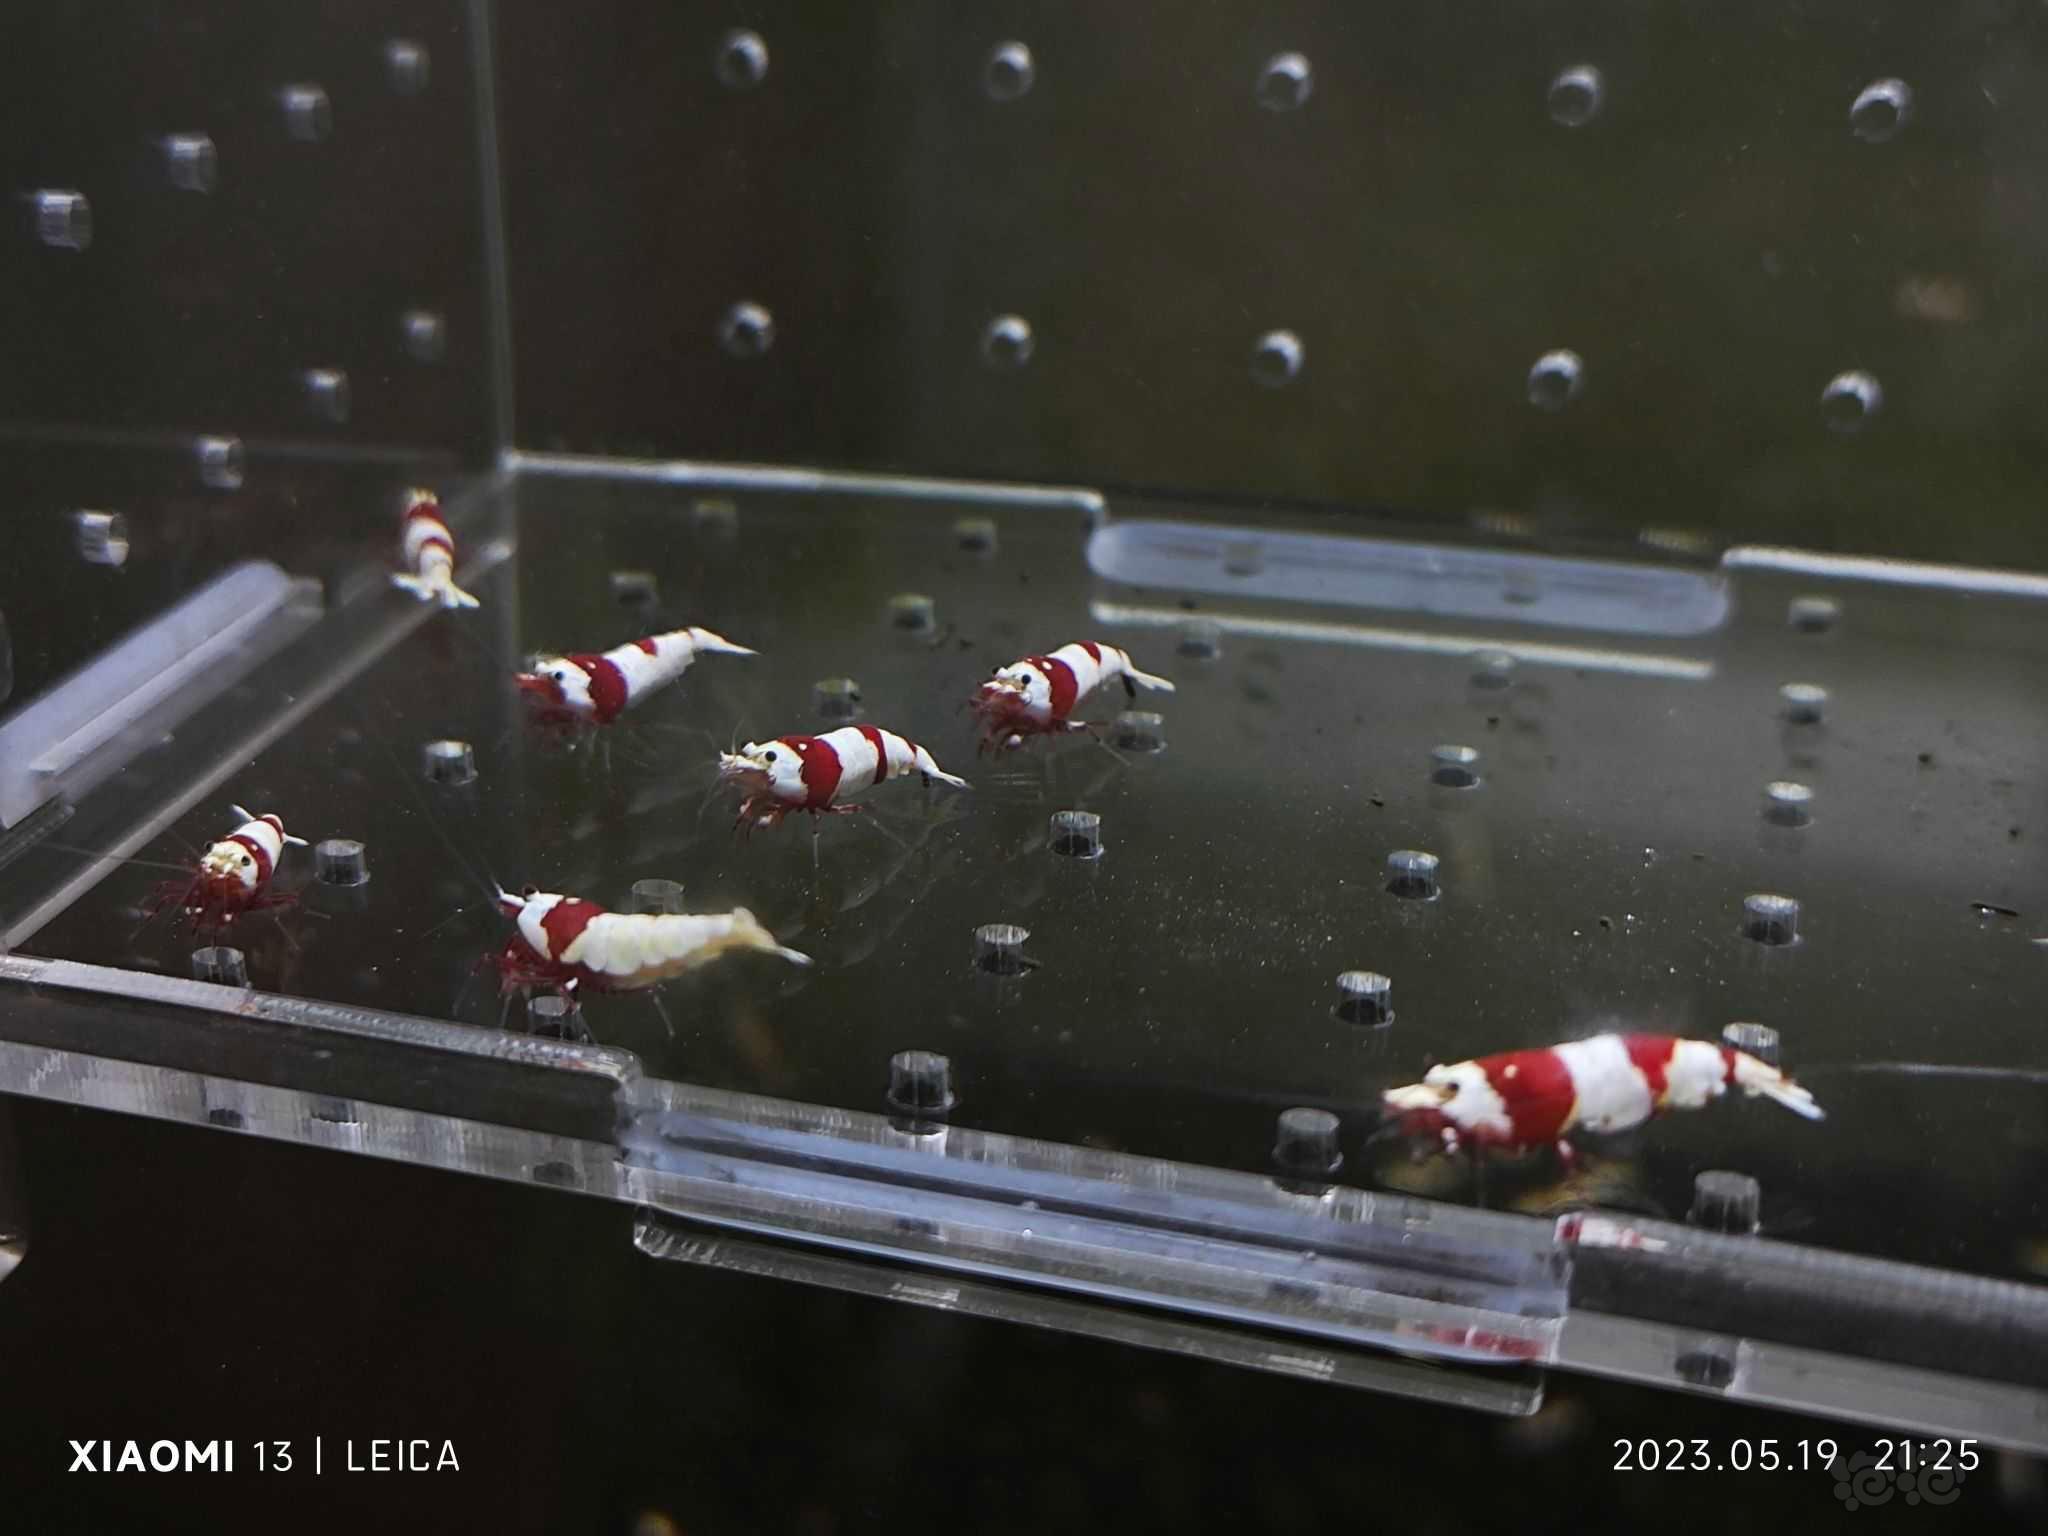 【水晶虾】出一份红白成虾繁殖组-图3